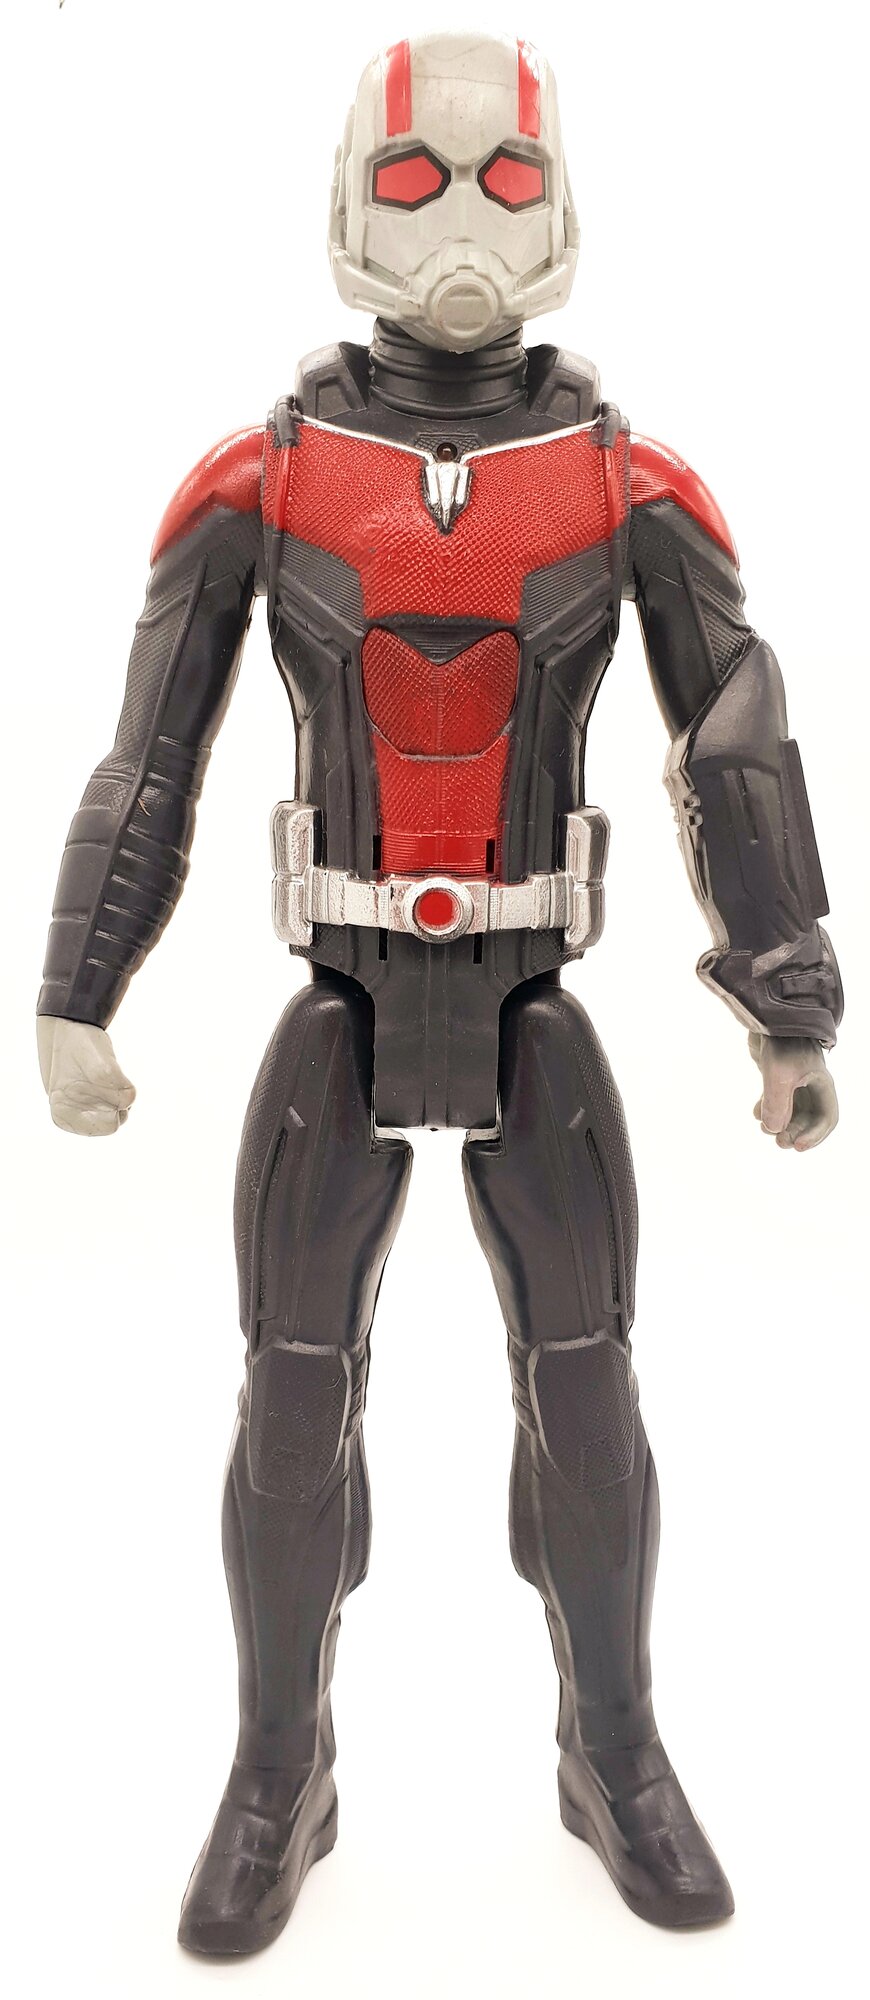 Игрушка для мальчика Фигурка Мстители Человек-Муравей, Ant-Man, 30 см.